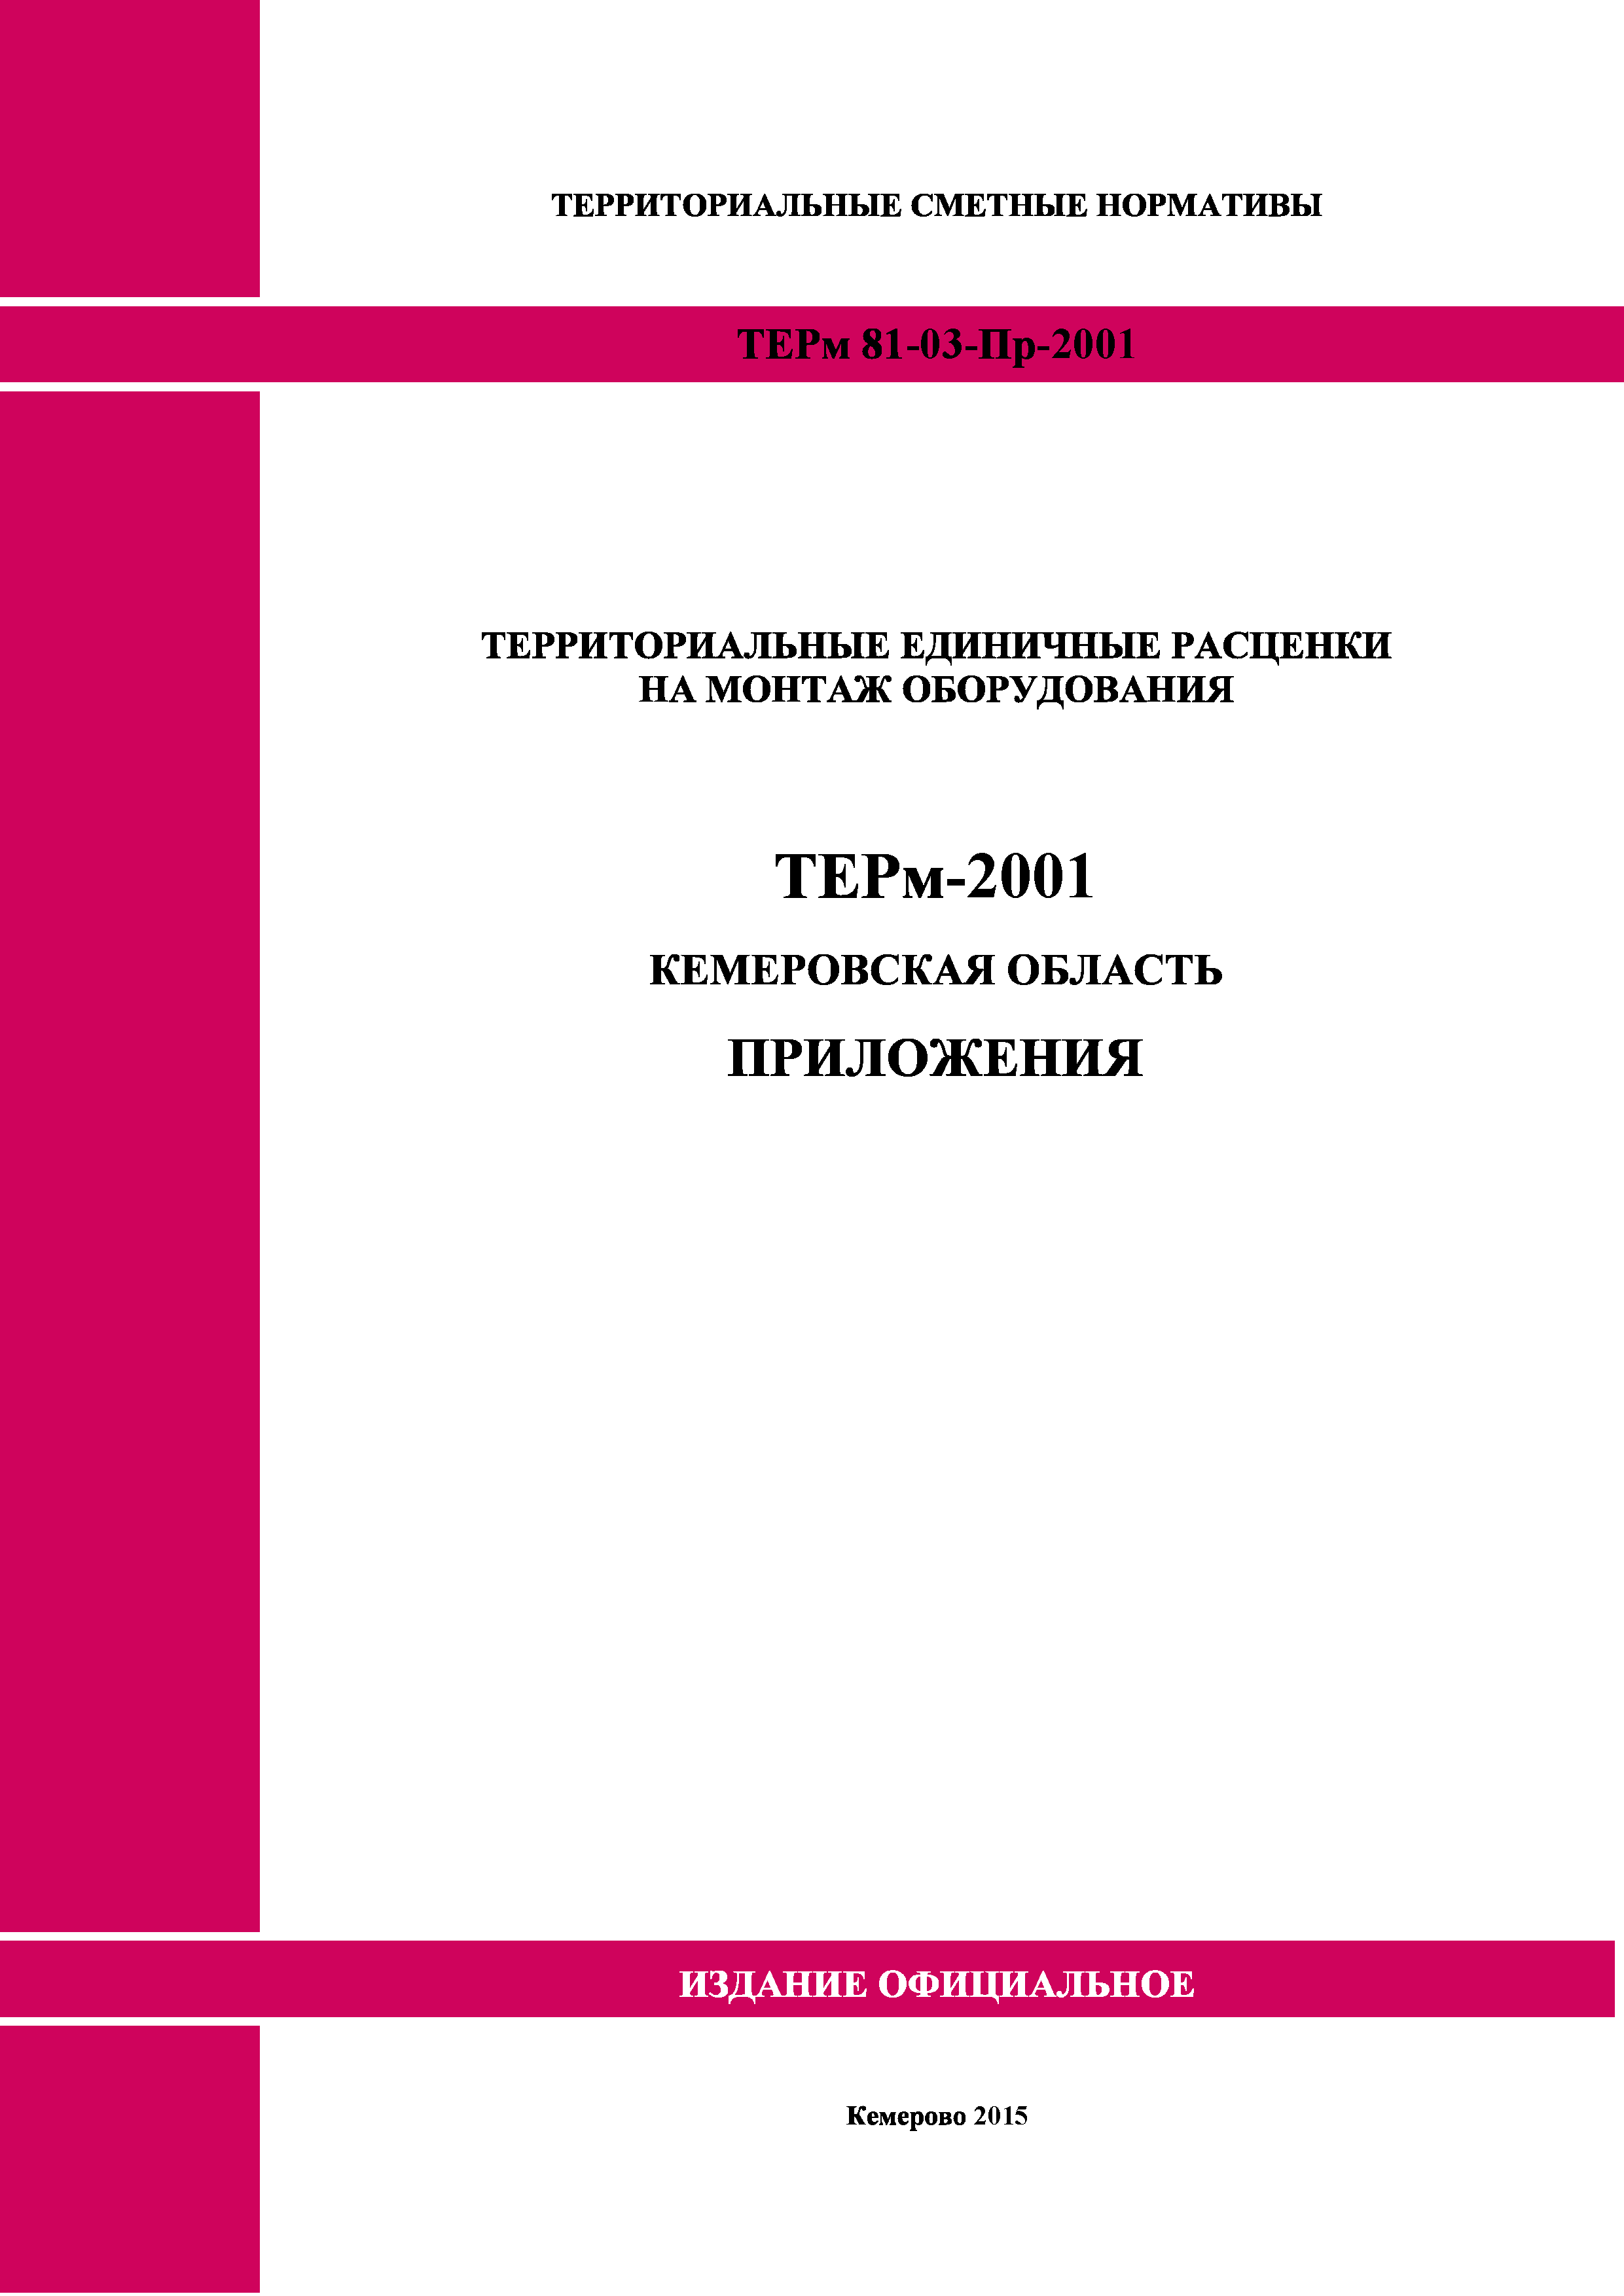 ТЕРм Кемеровская область 81-03-Пр-2001